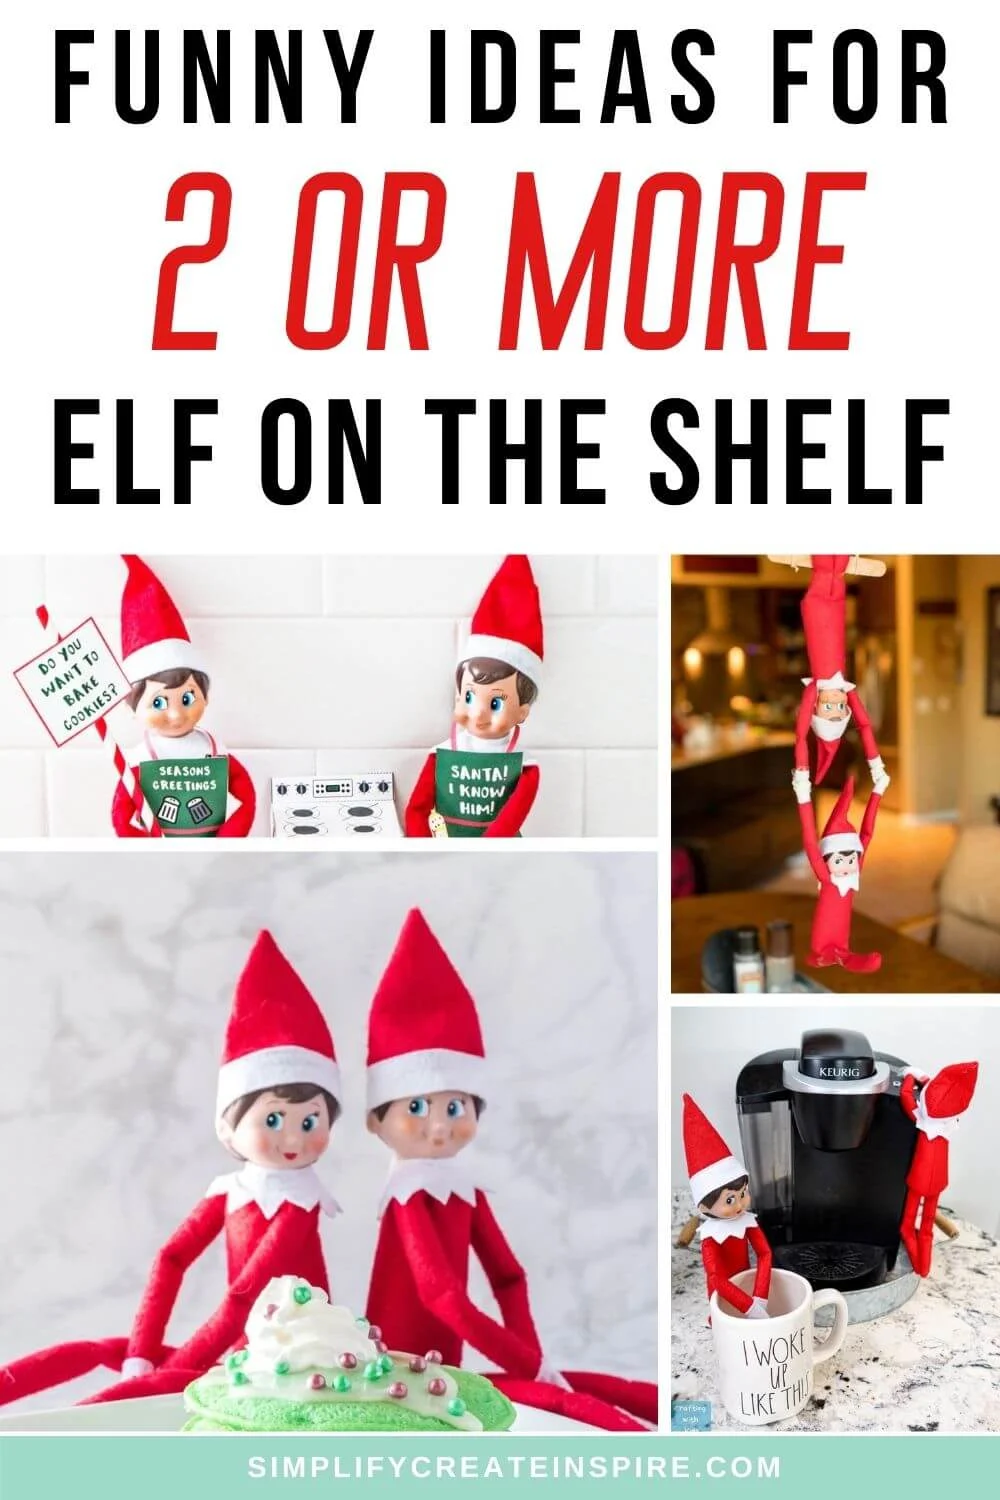 Elves on the shelf ideas for 2 elves